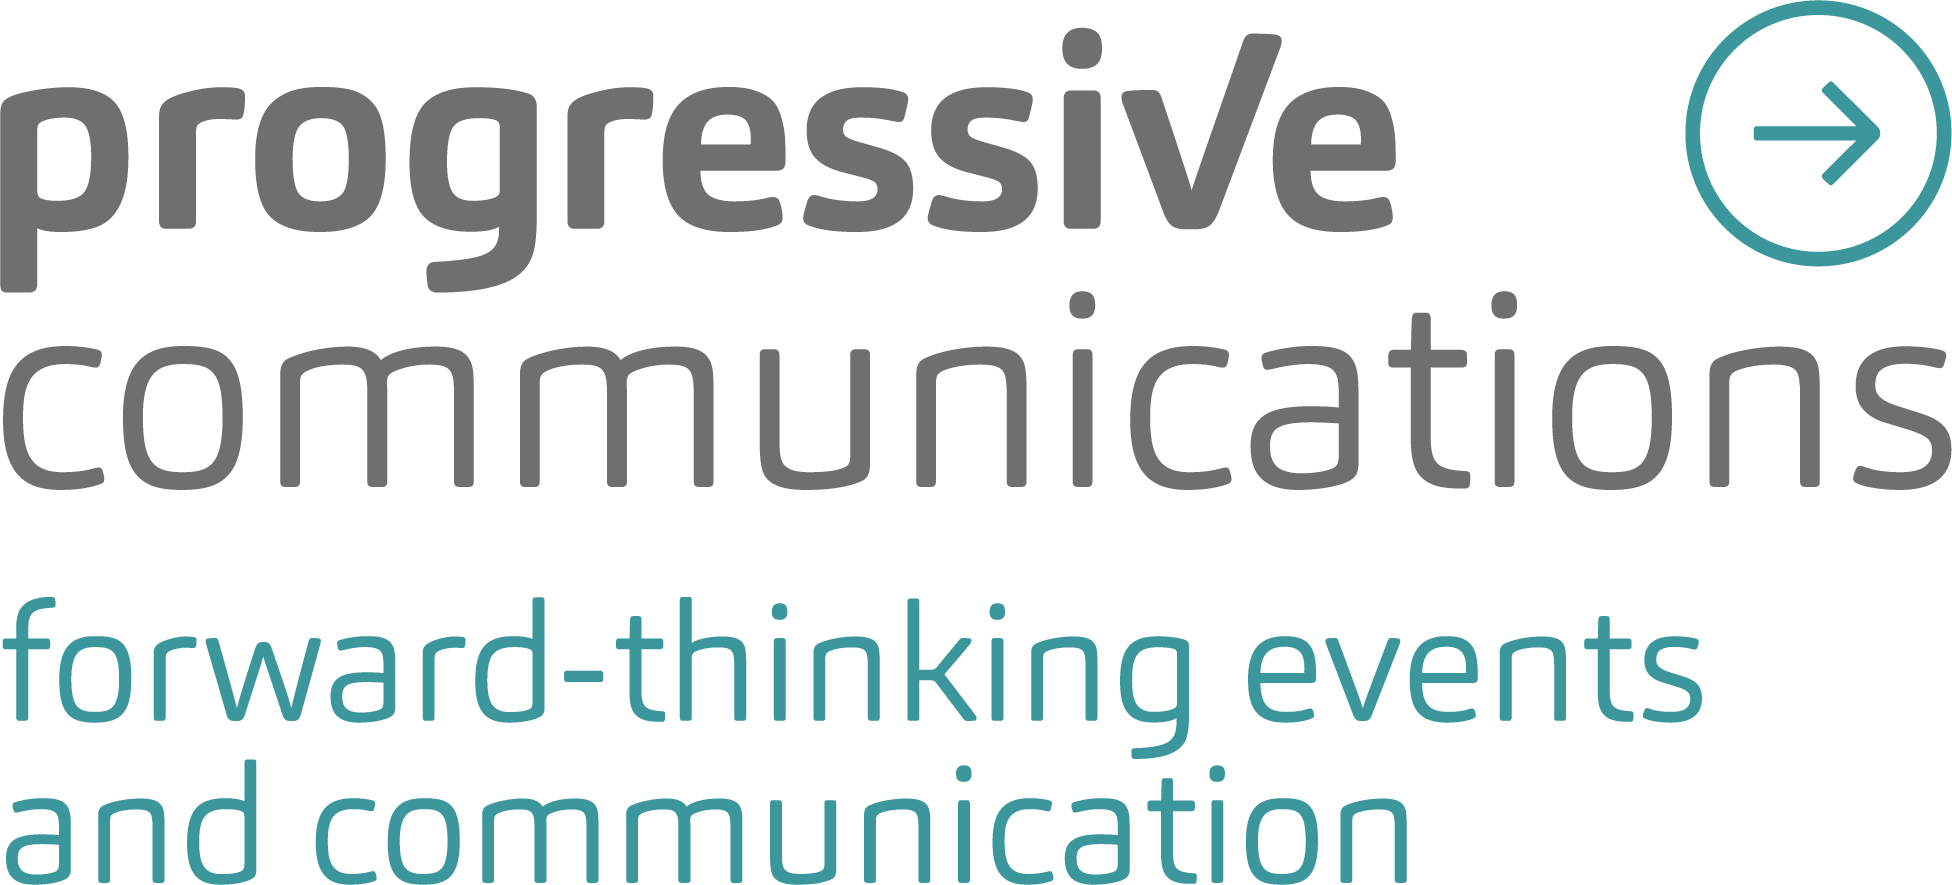 Progressive Communications